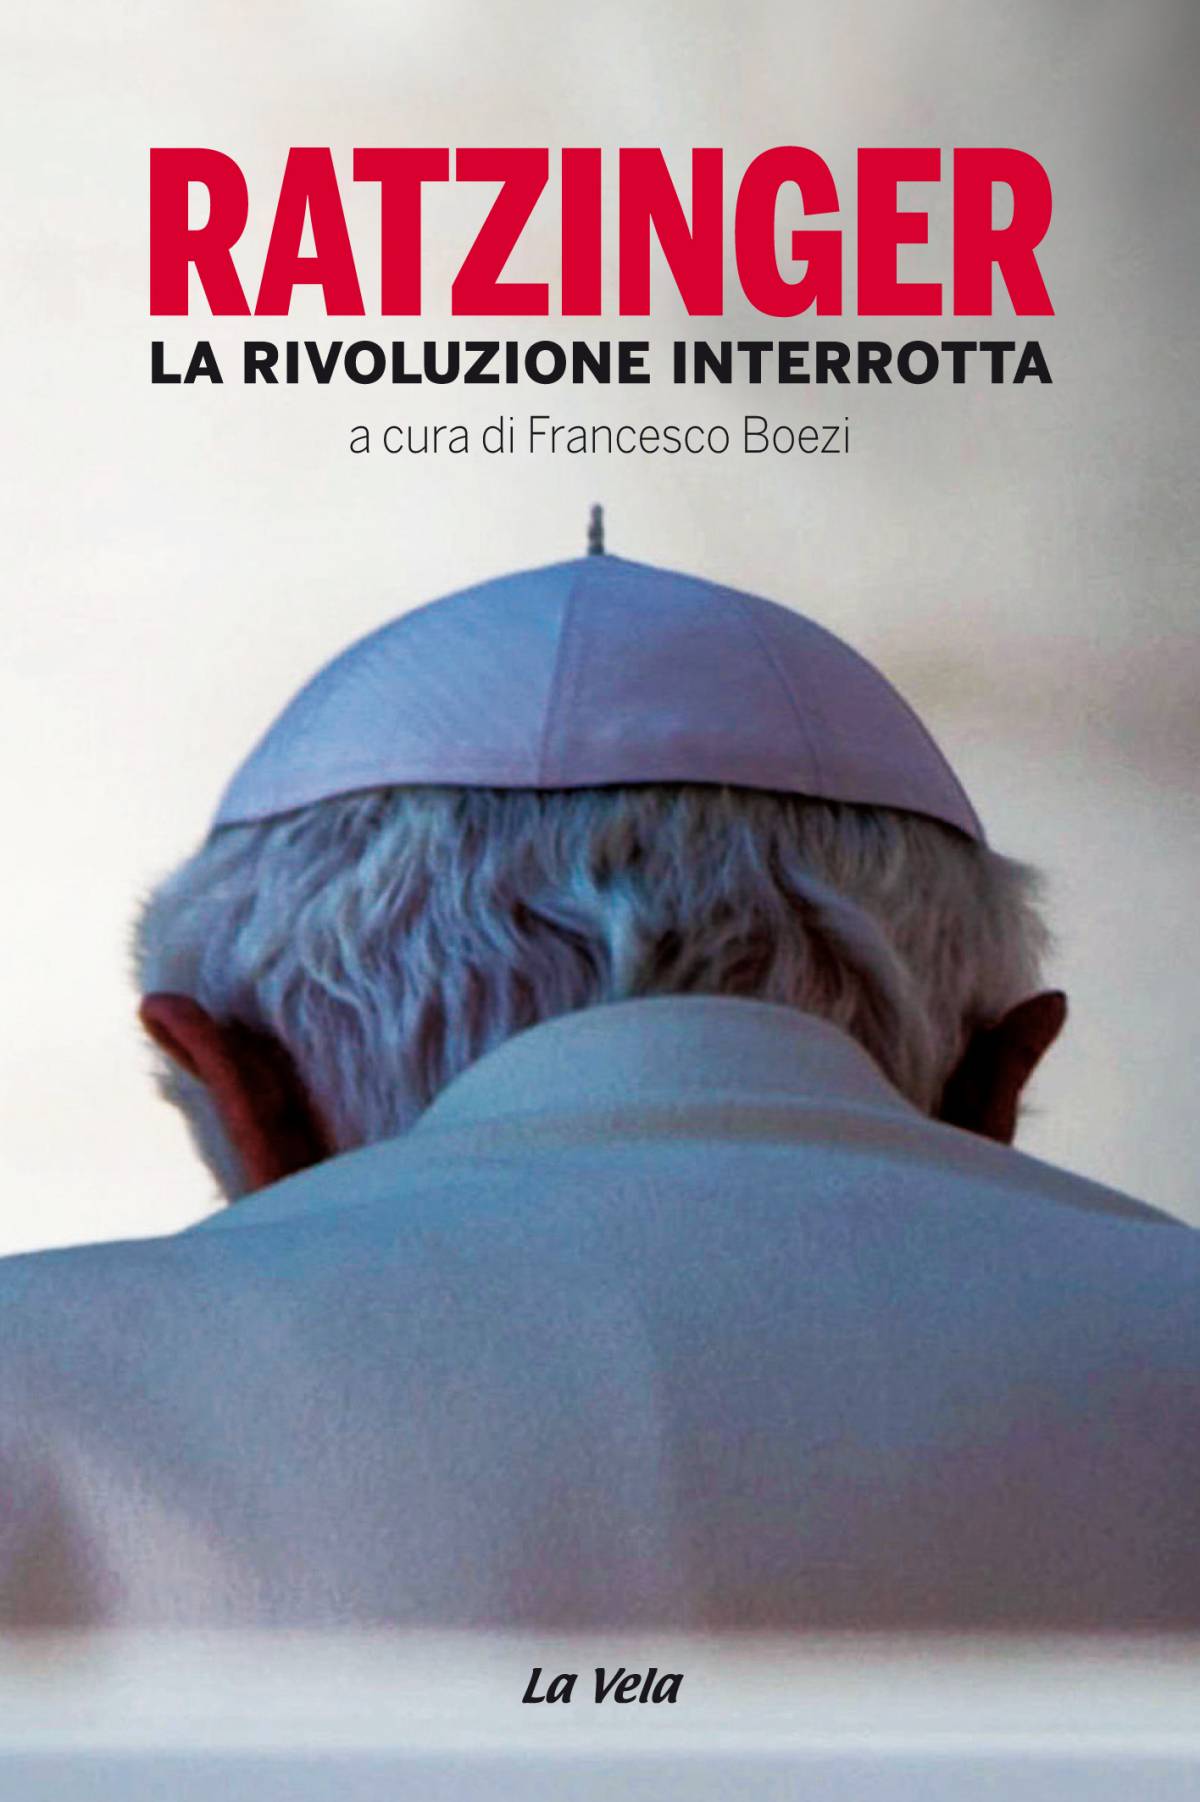 "La rivoluzione interrotta": quei retroscena sulla rinuncia di Ratzinger